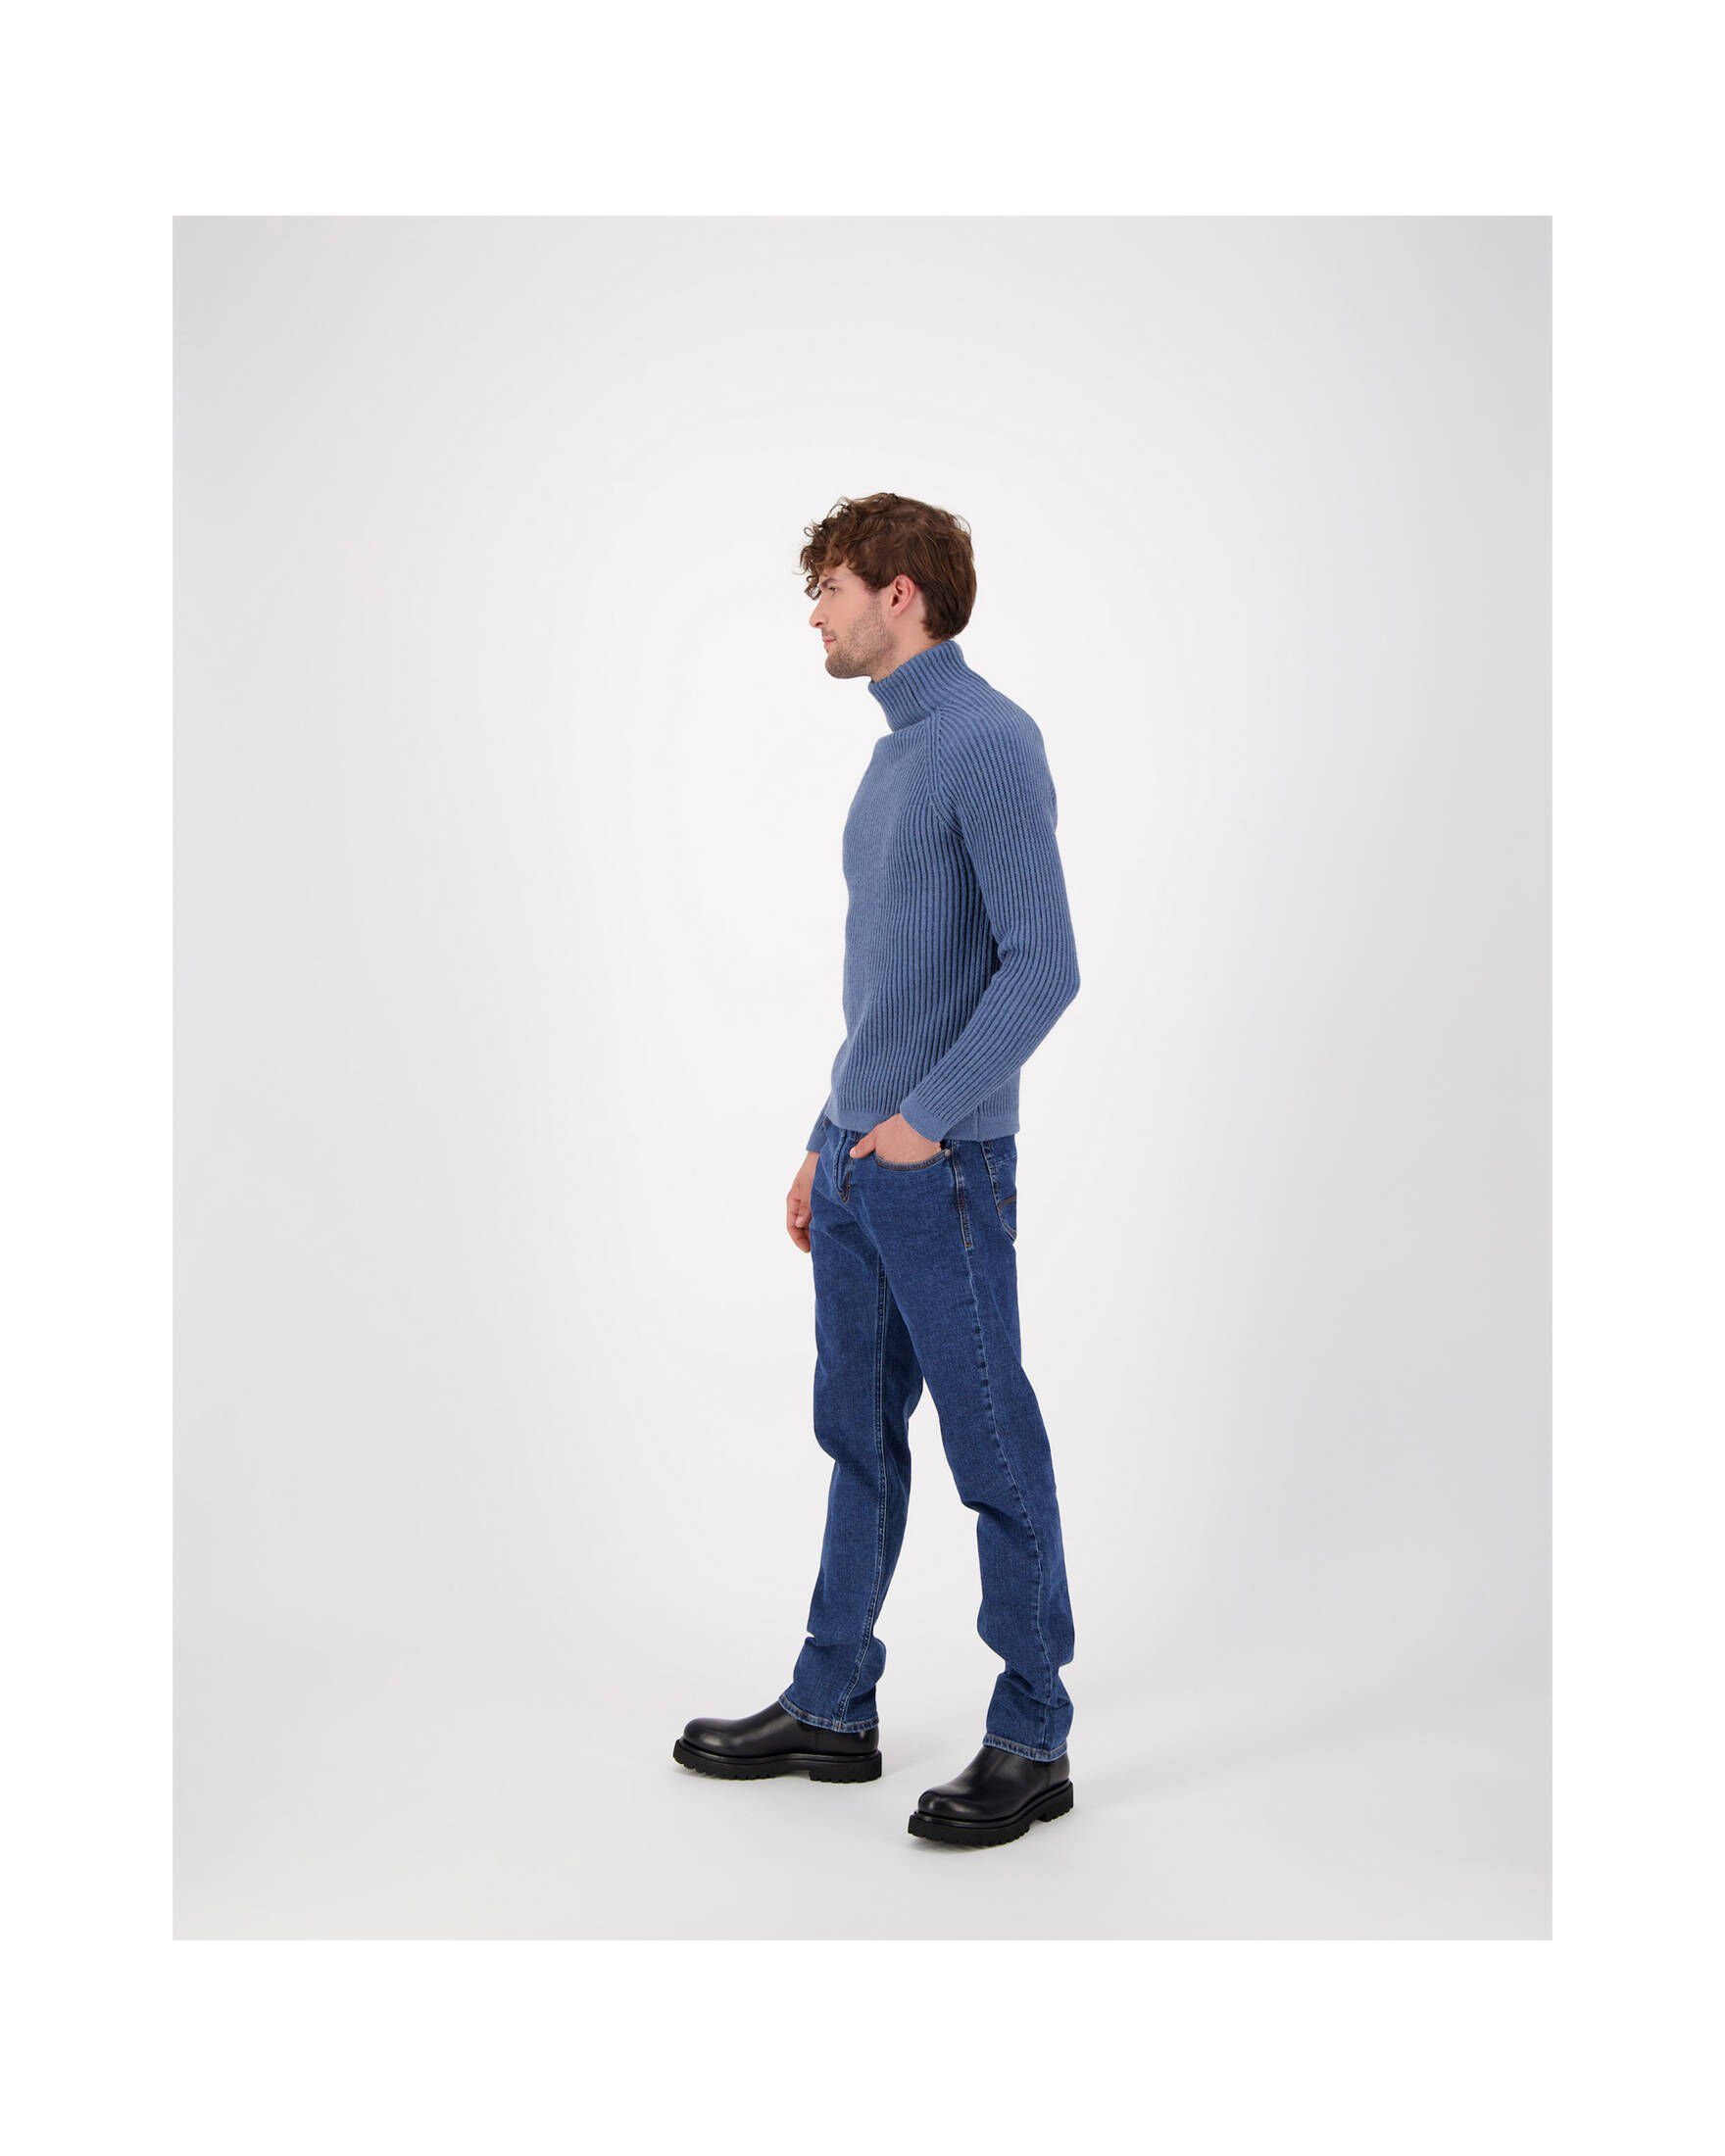 H900 (82) 5-Pocket-Jeans MAC (1-tlg) Regular Herren Jeans Fit blue BEN